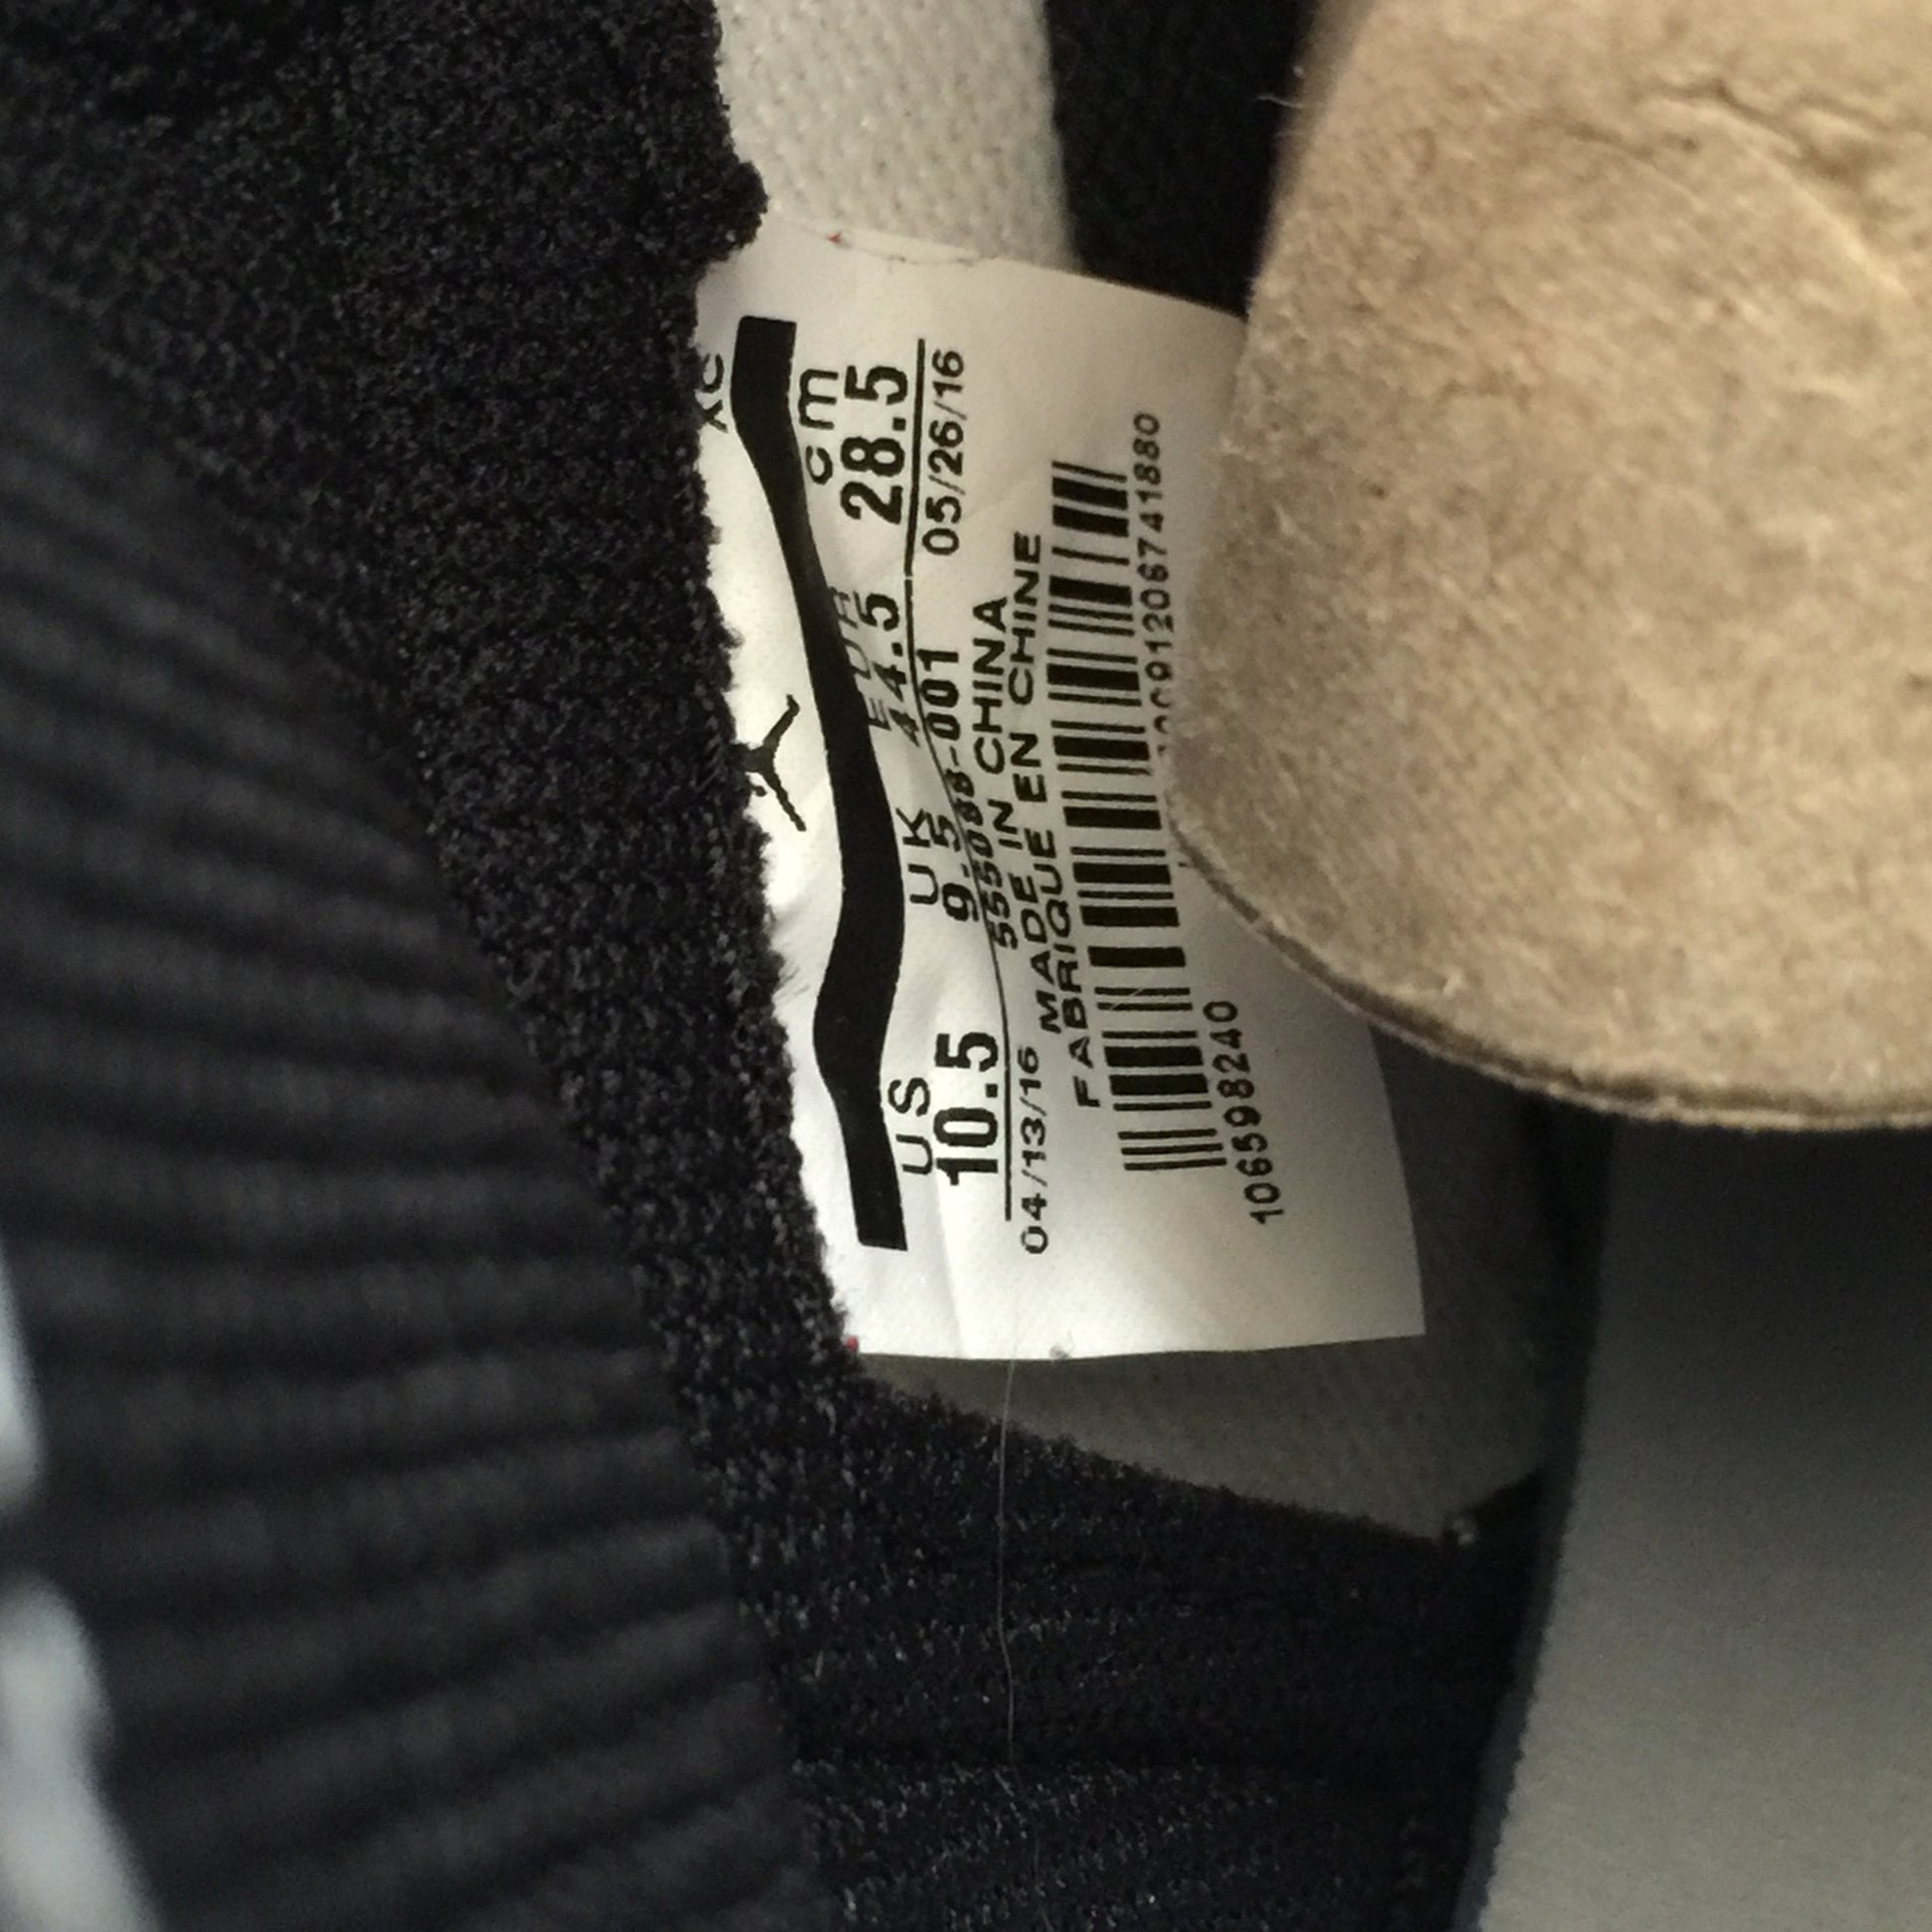 DS Nike Air Jordan 1 I High OG Banned Size 10/Size 10.5/Size 11.5/Size 12/Size 13/Size 14 - DOPEFOOT
 - 8